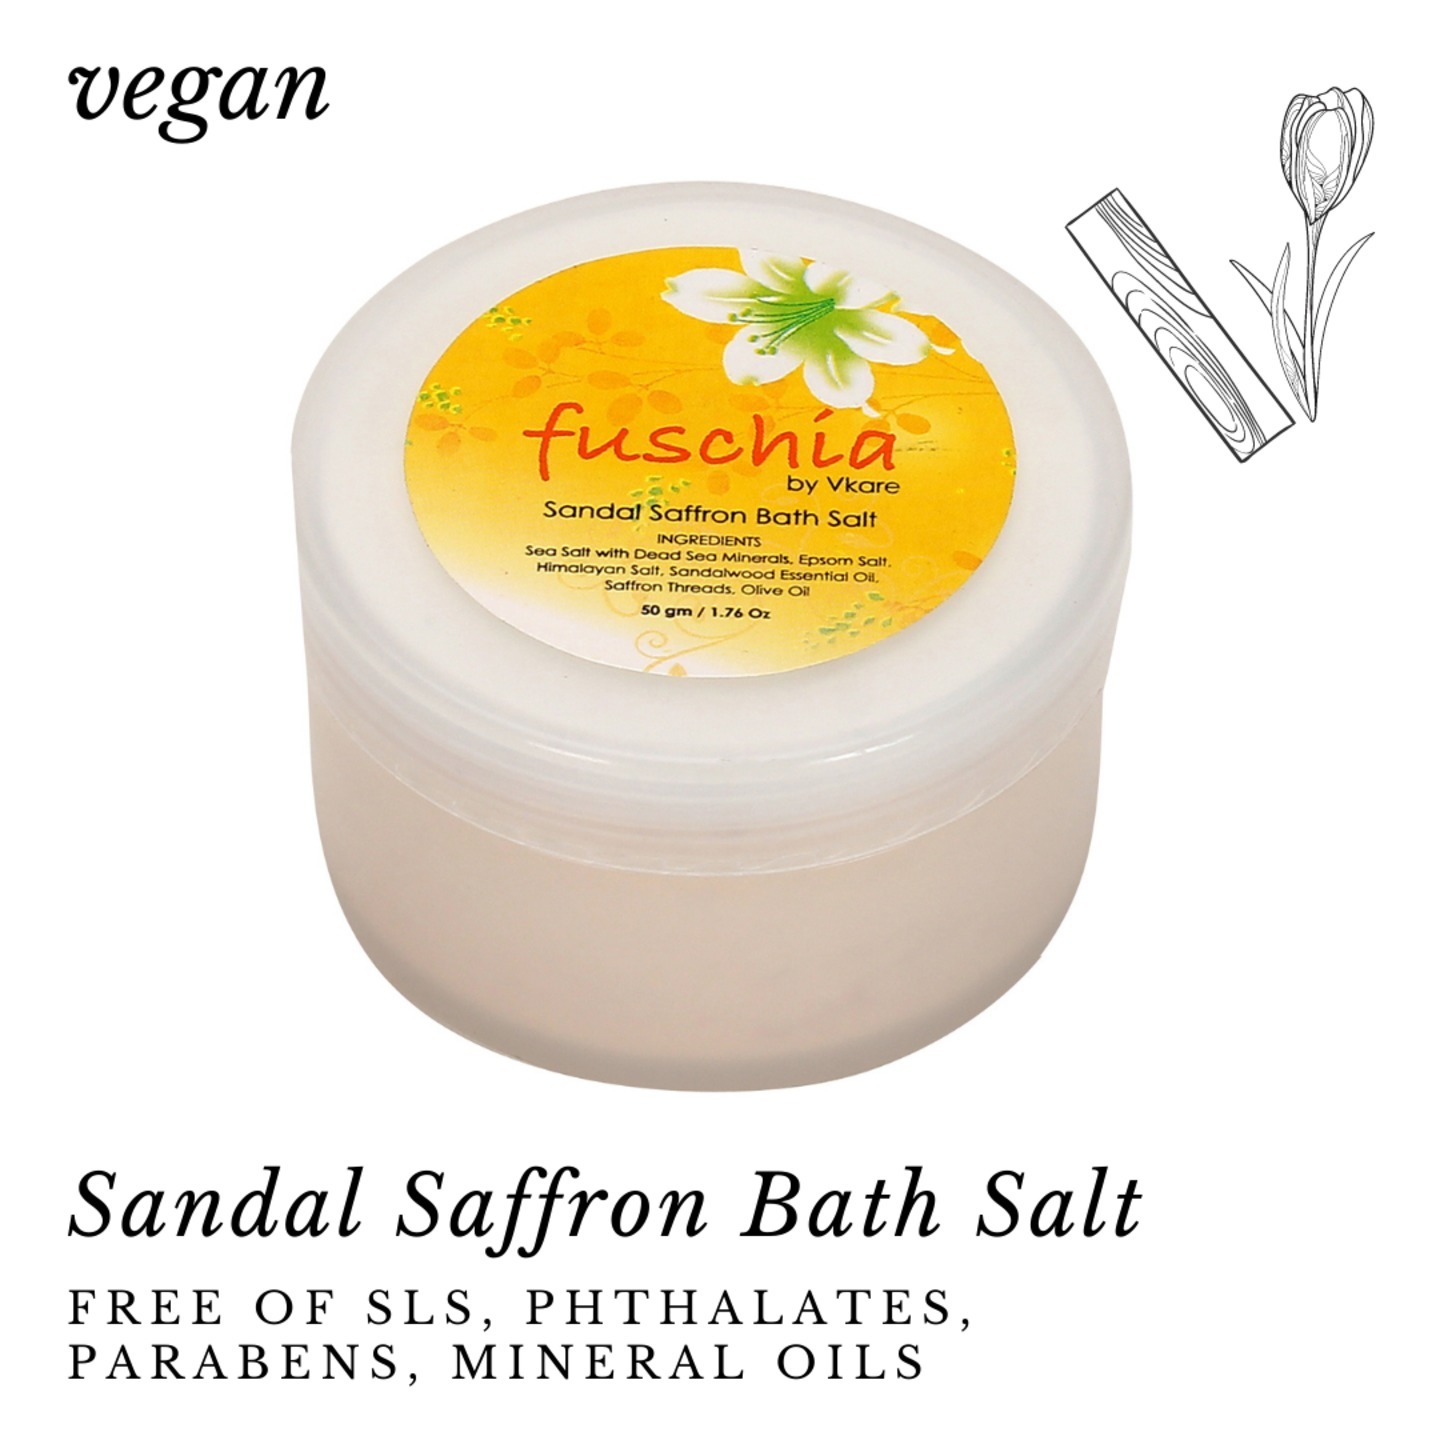 Fuschia - Sandal Saffron Bath salt - 50 gms